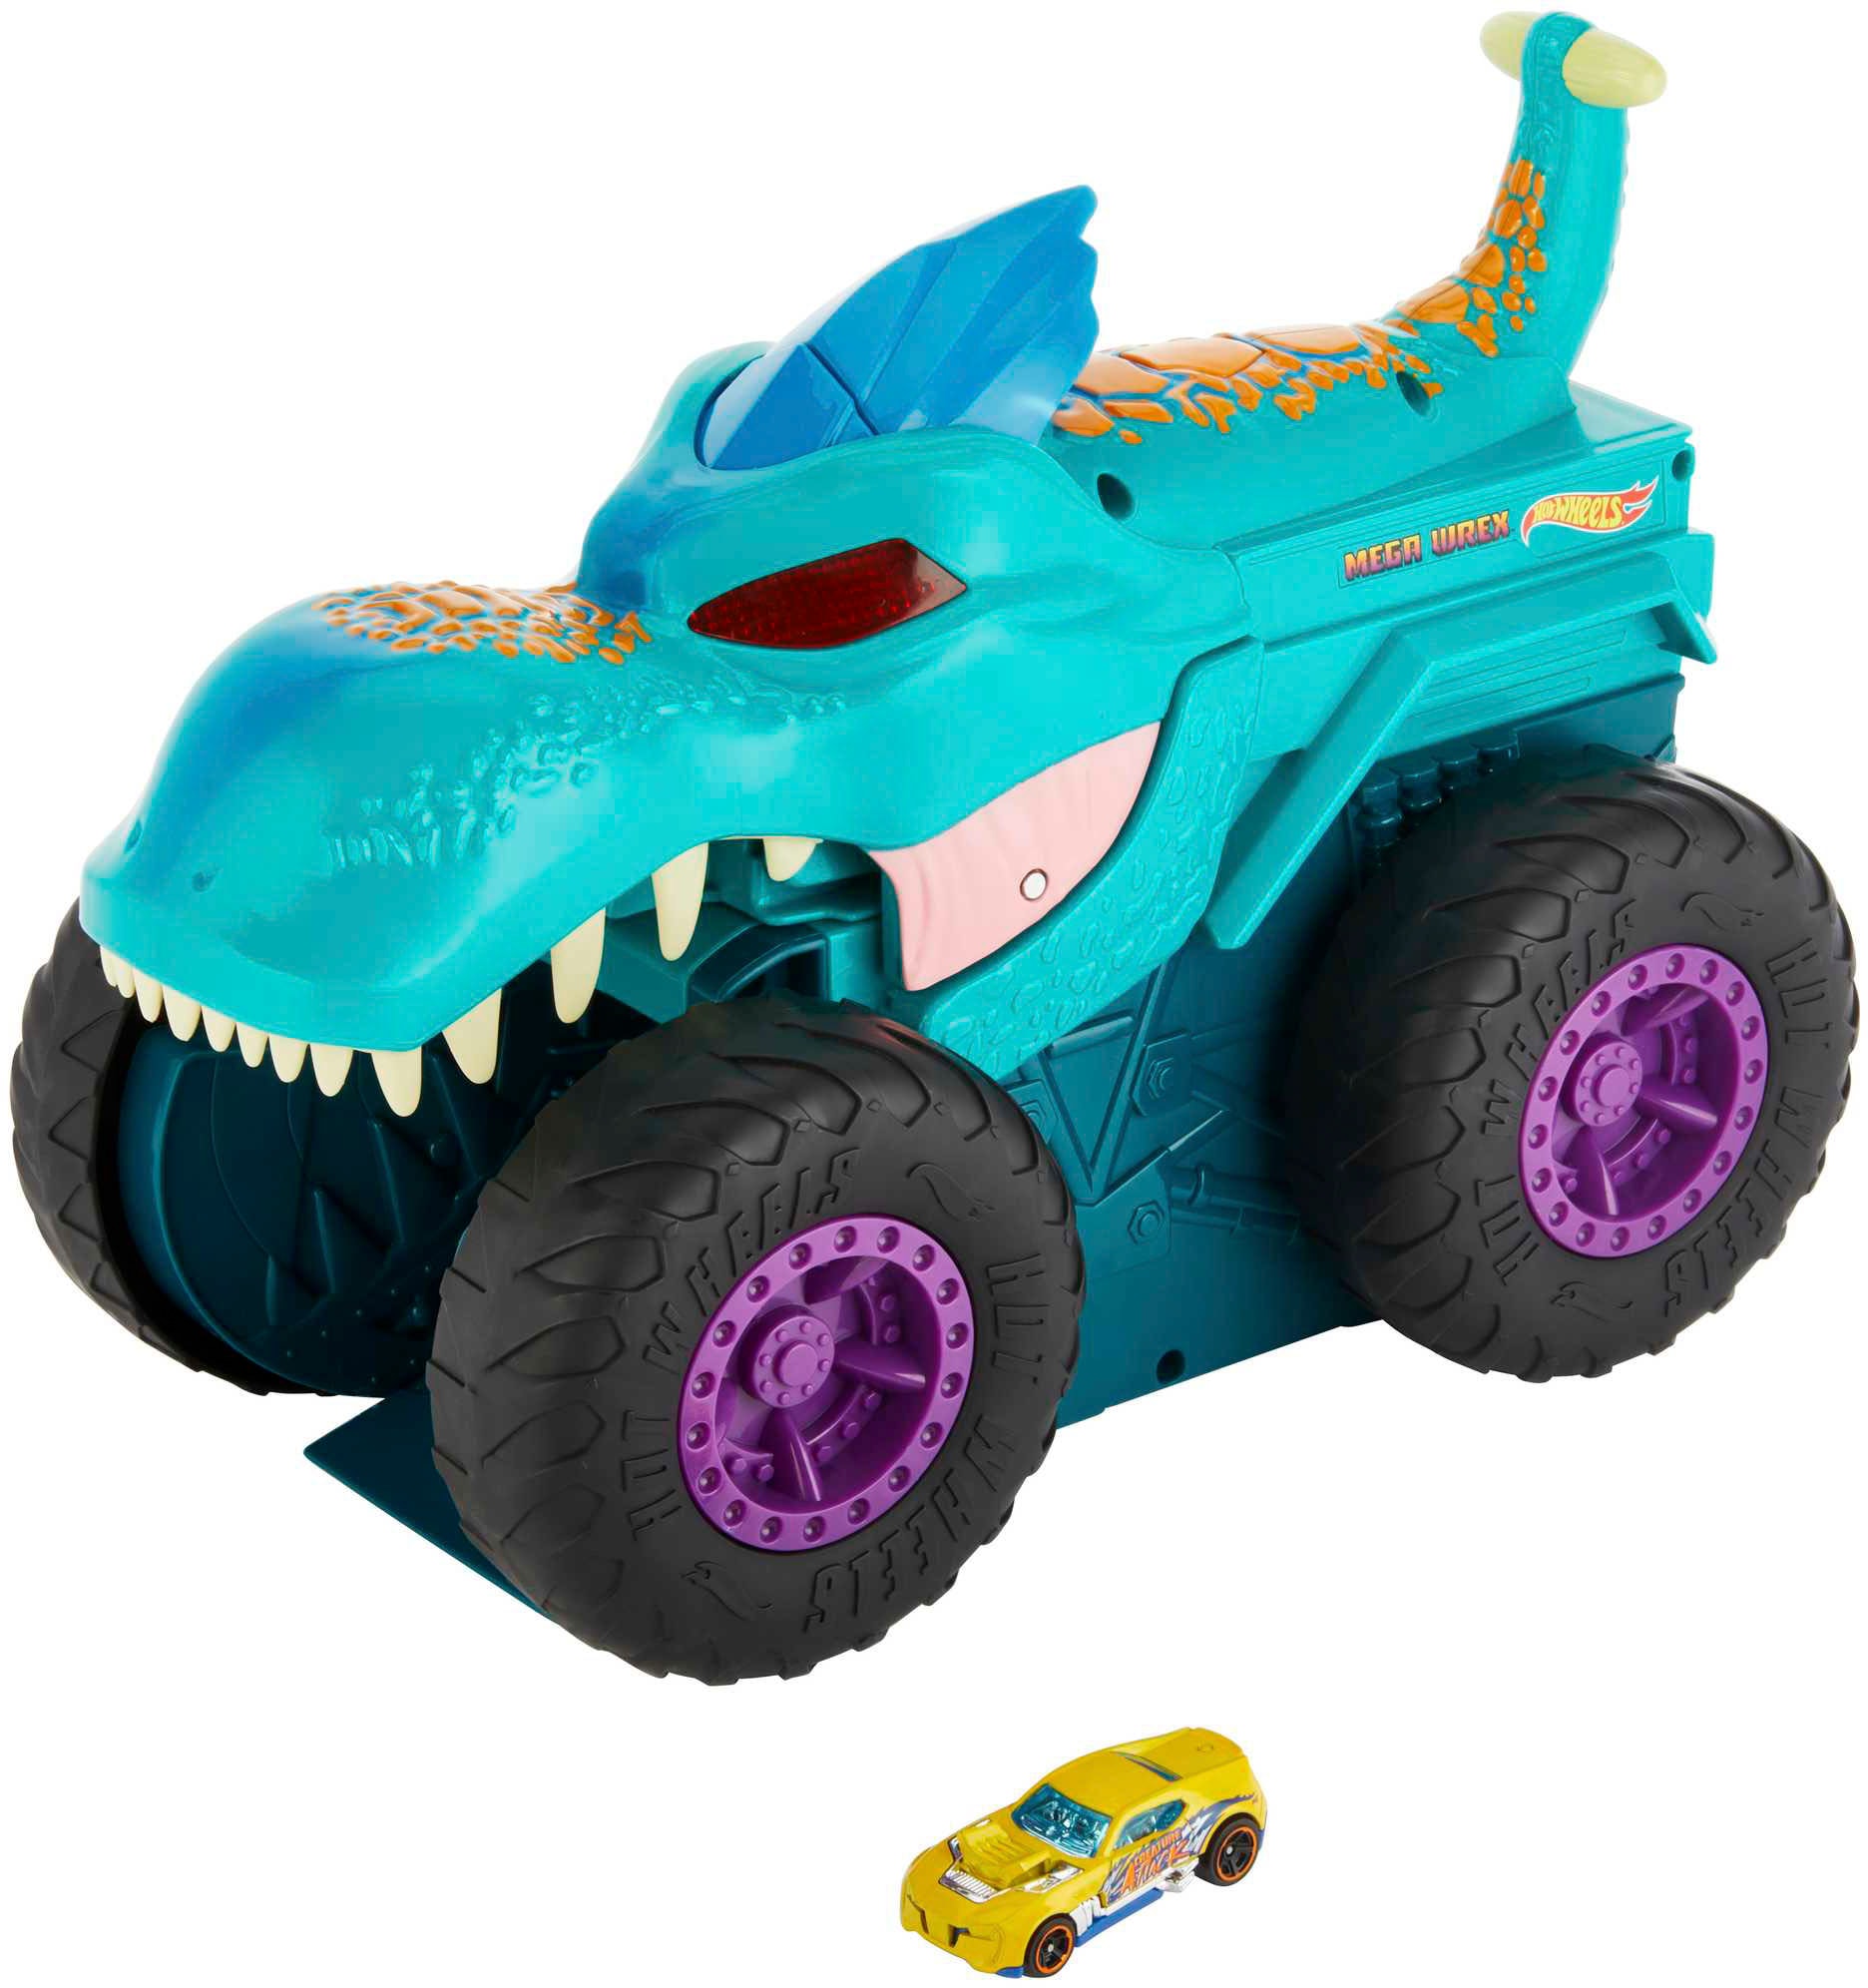 Spielzeug-Monstertruck »Mega-Wrex«, mit Licht und Sound